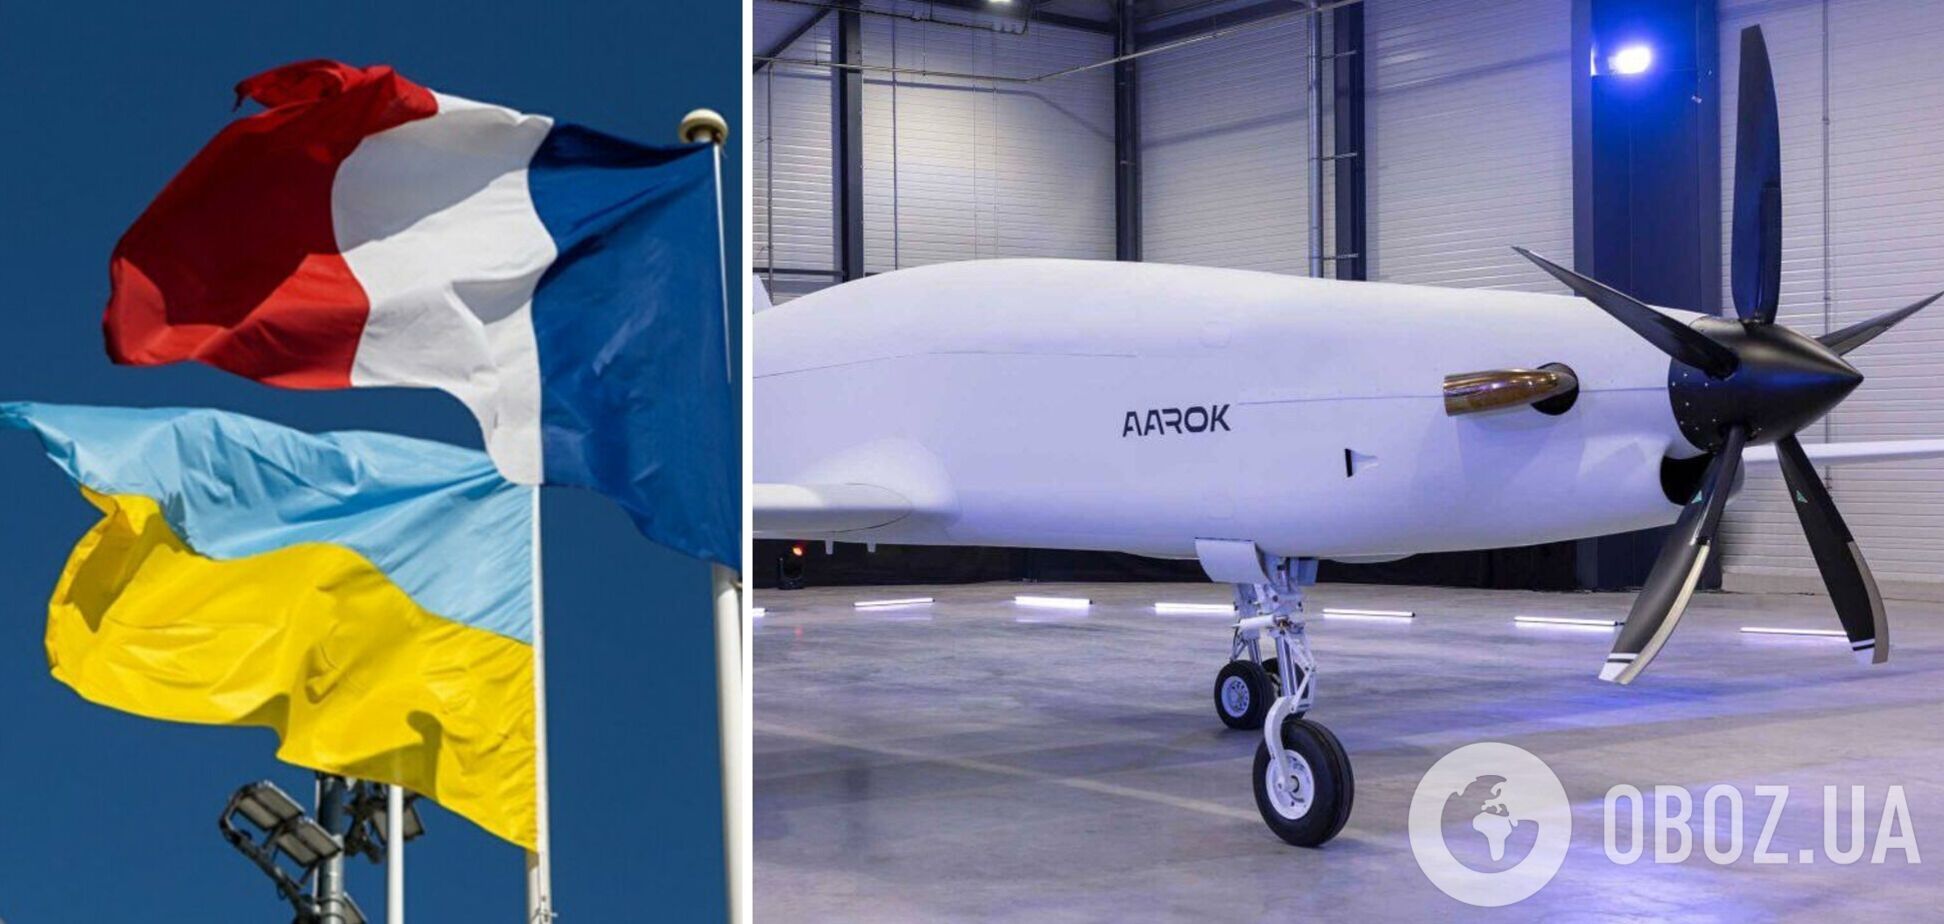 Французька компанія спільно з українським підприємством 'Антонов' вироблятиме дрони Aarok MALE – La Tribune